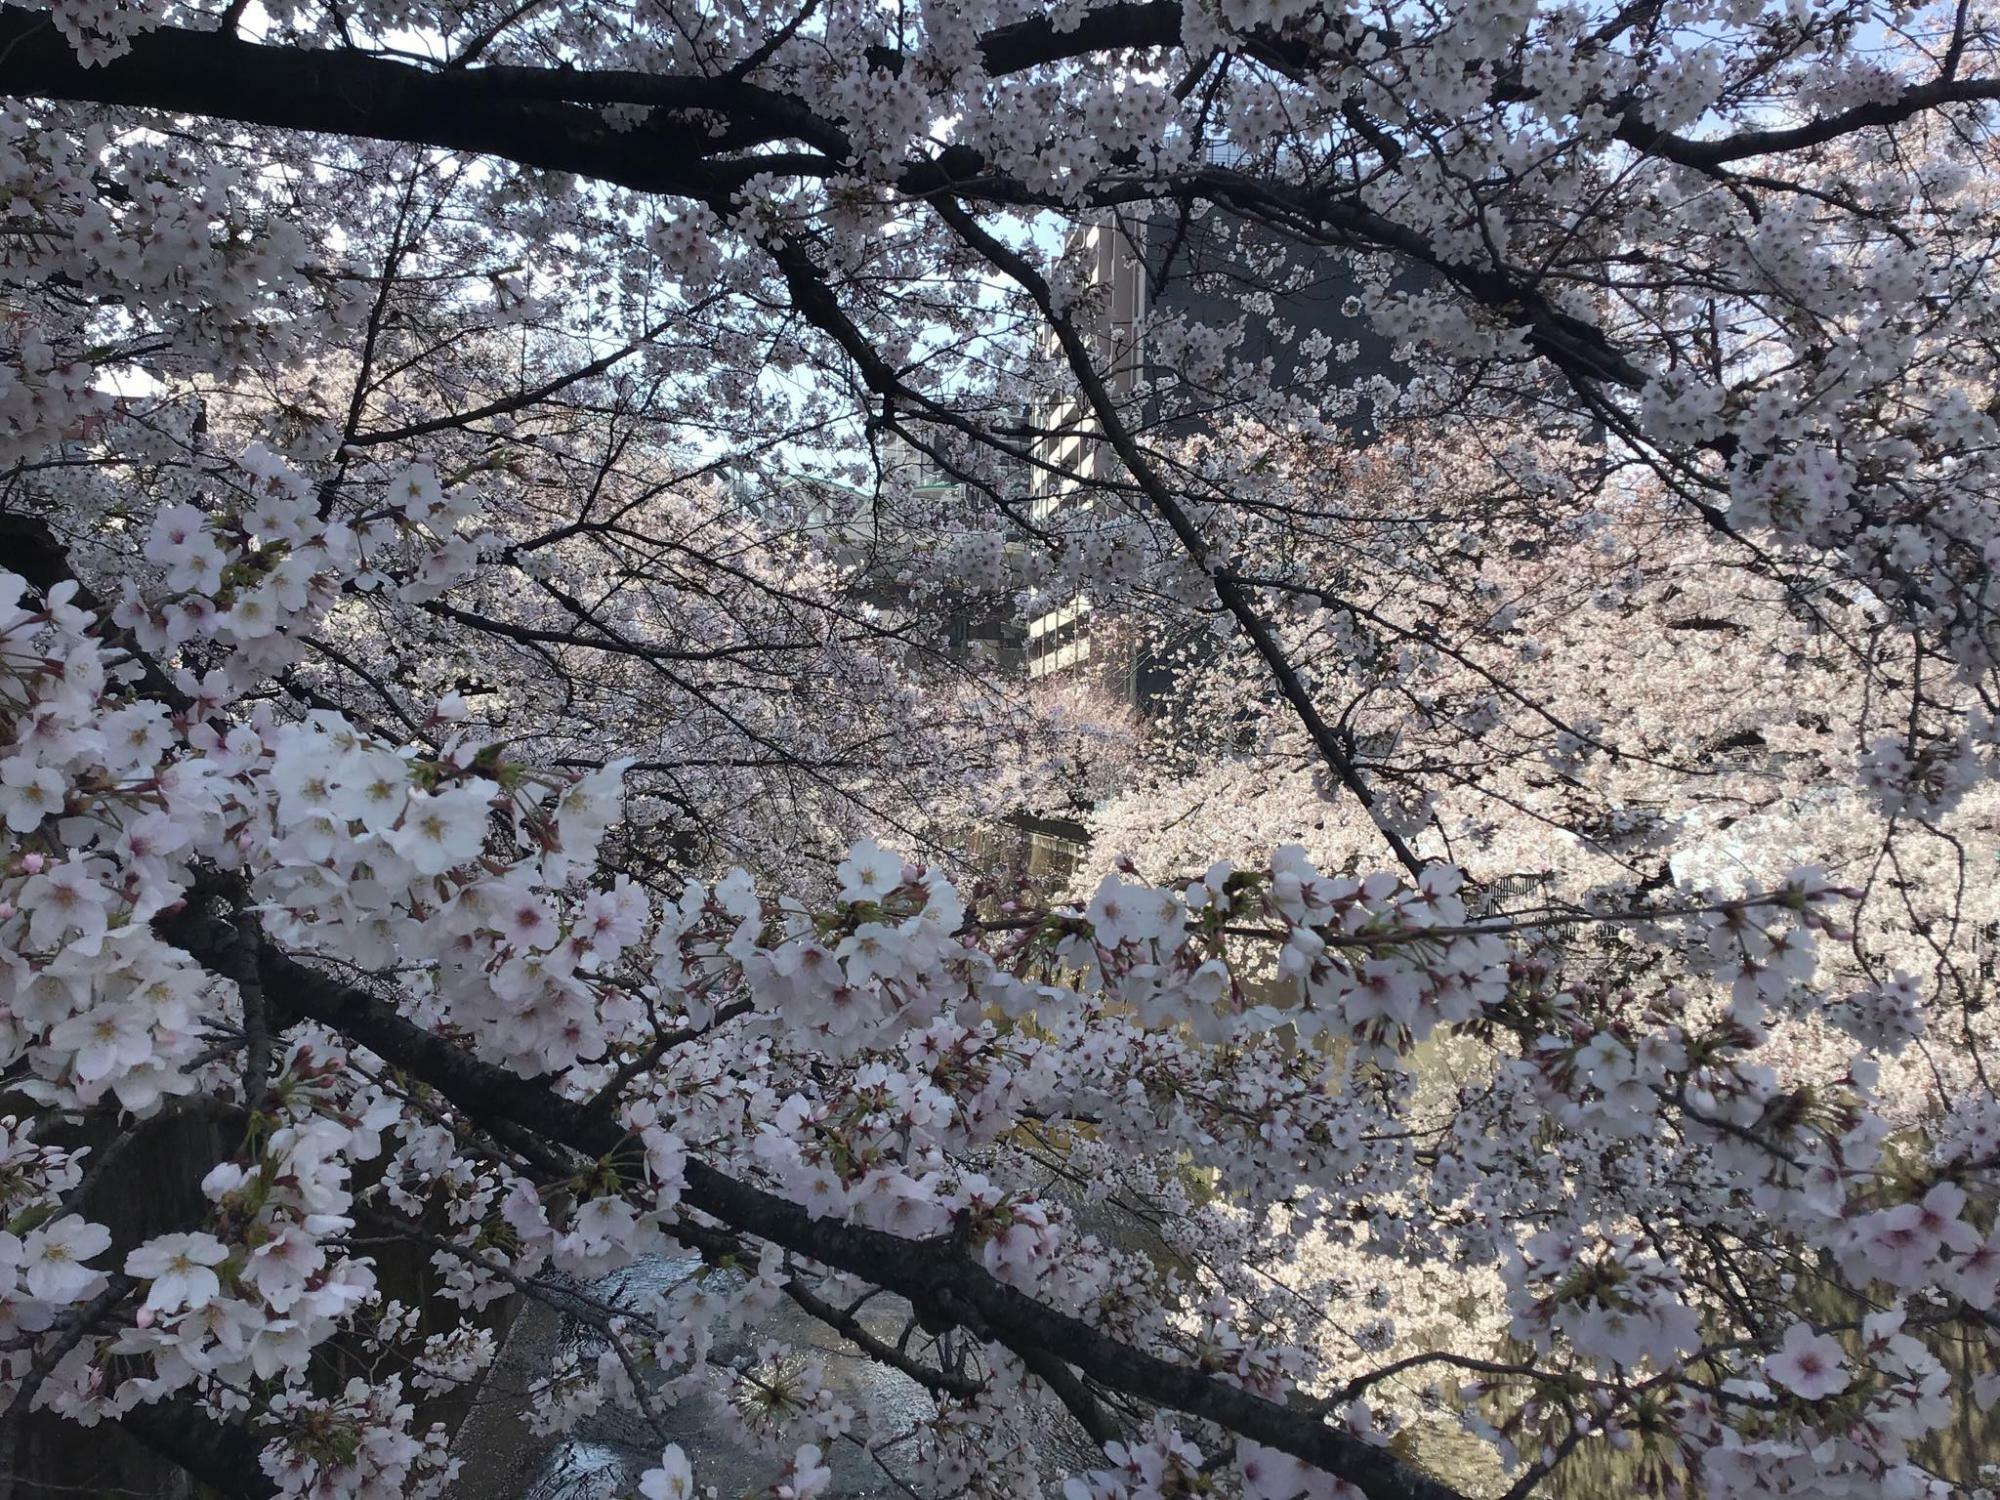 石神井川沿いの桜